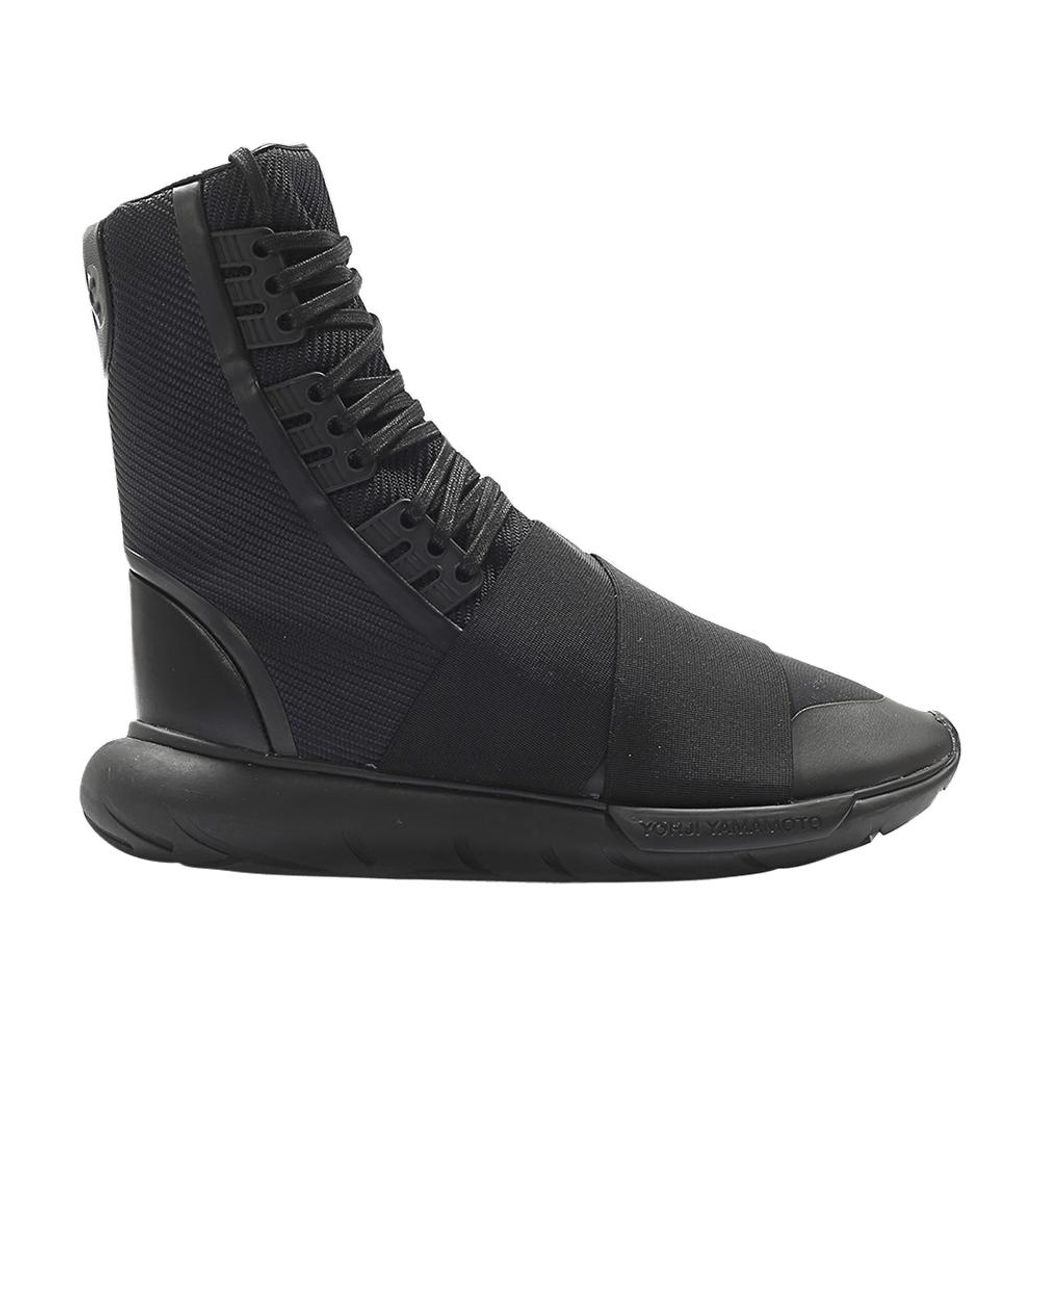 adidas Y 3 Qasa Boot 'black' for Men | Lyst